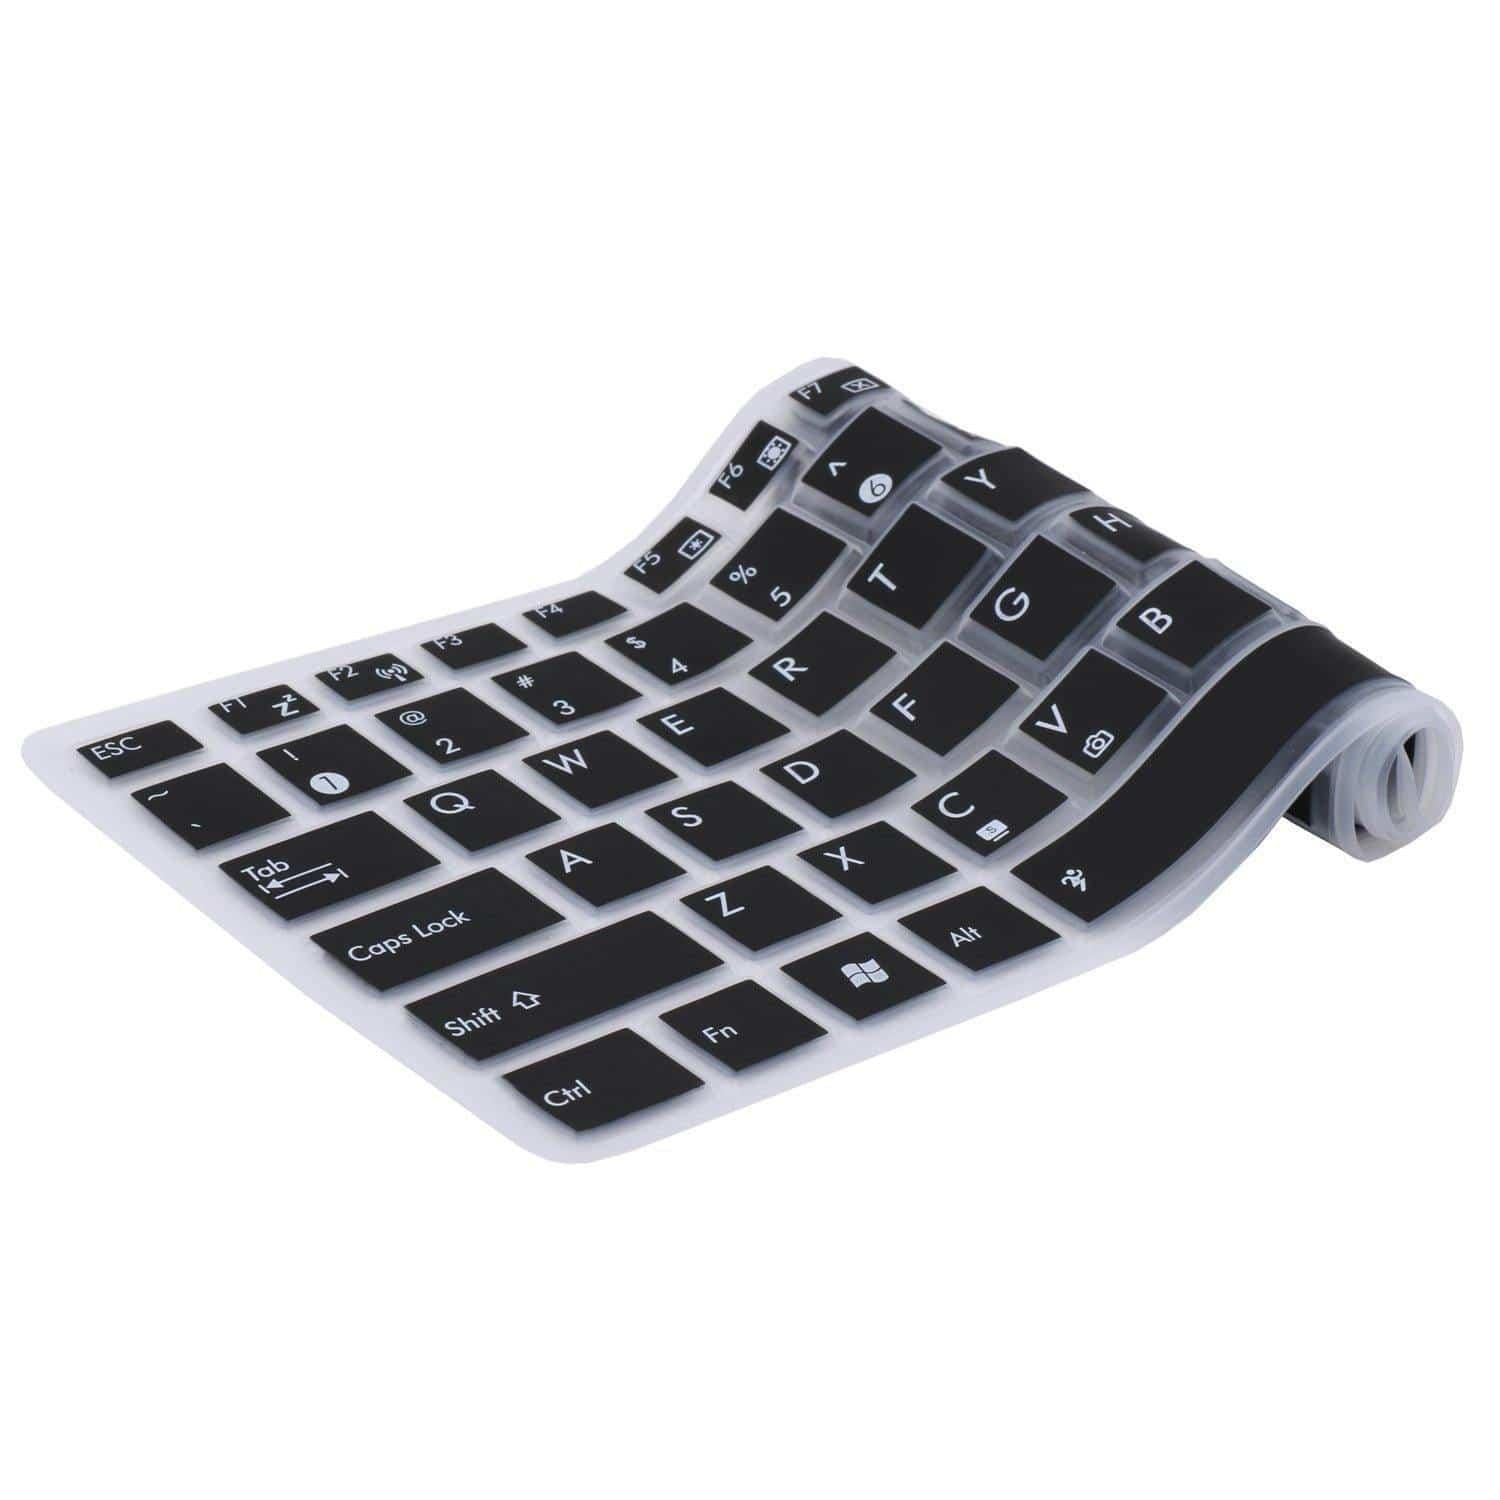 Dealsplant Keyboard Skin protector for Acer Aspire 5938,5938,7235,7535,7735,7552,7741,5938g-Keyboard Protectors-dealsplant